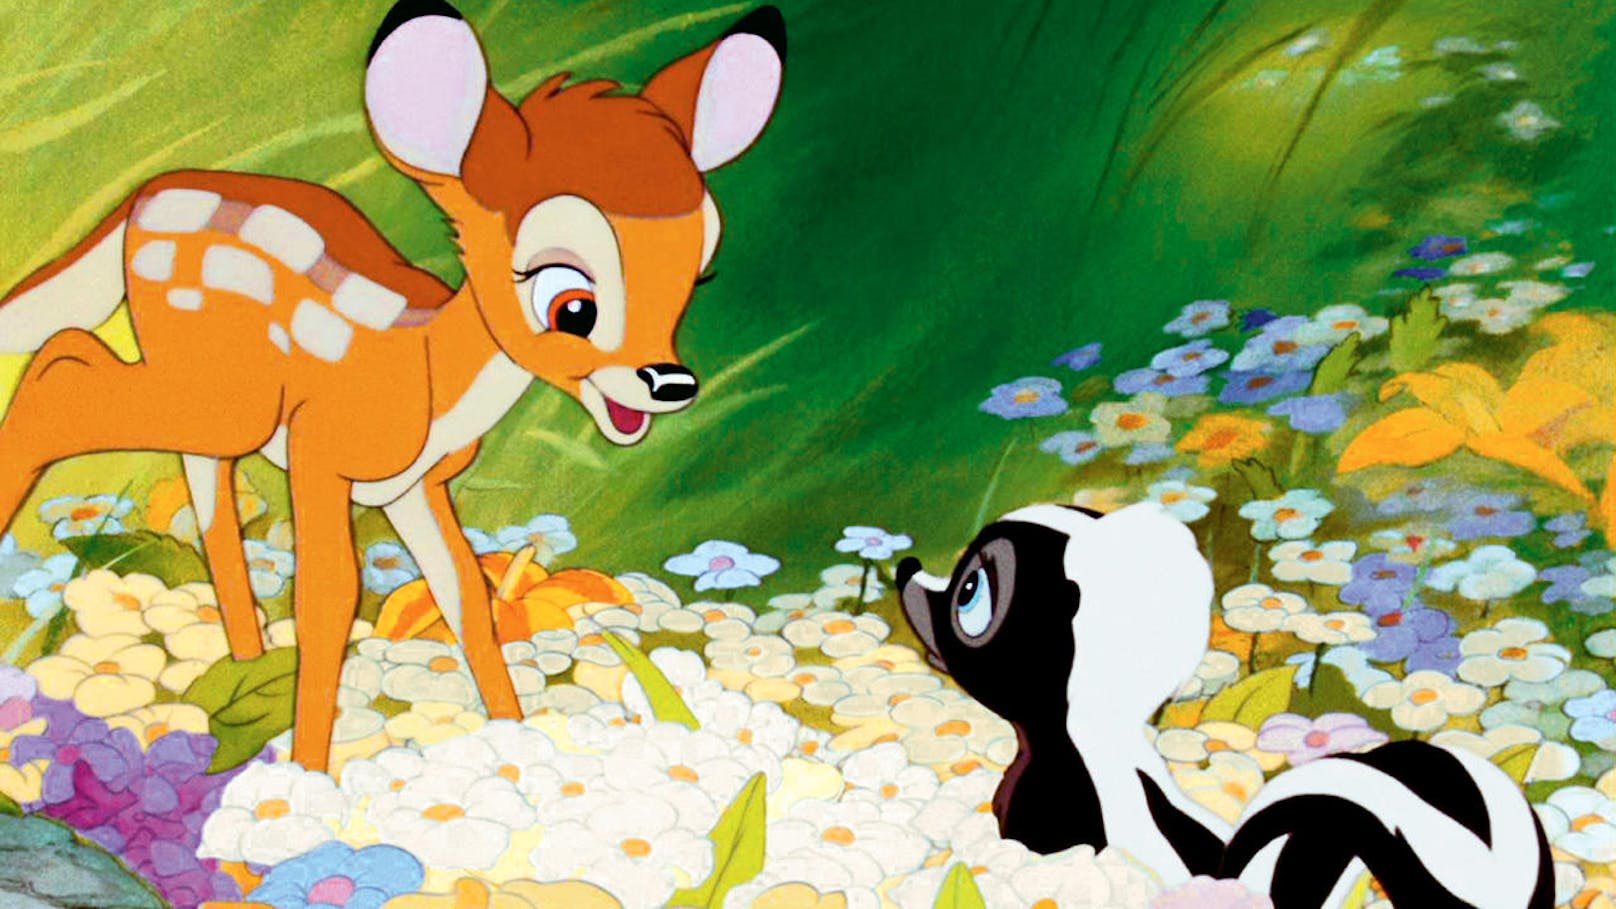 Die Abenteuer von Bambi und seinen Freunden haben seither ein Millionenpublikum begeistert. Heute gilt der Film zurecht als Klassiker und Meisterwerk der Zeichentrick-Kunst.